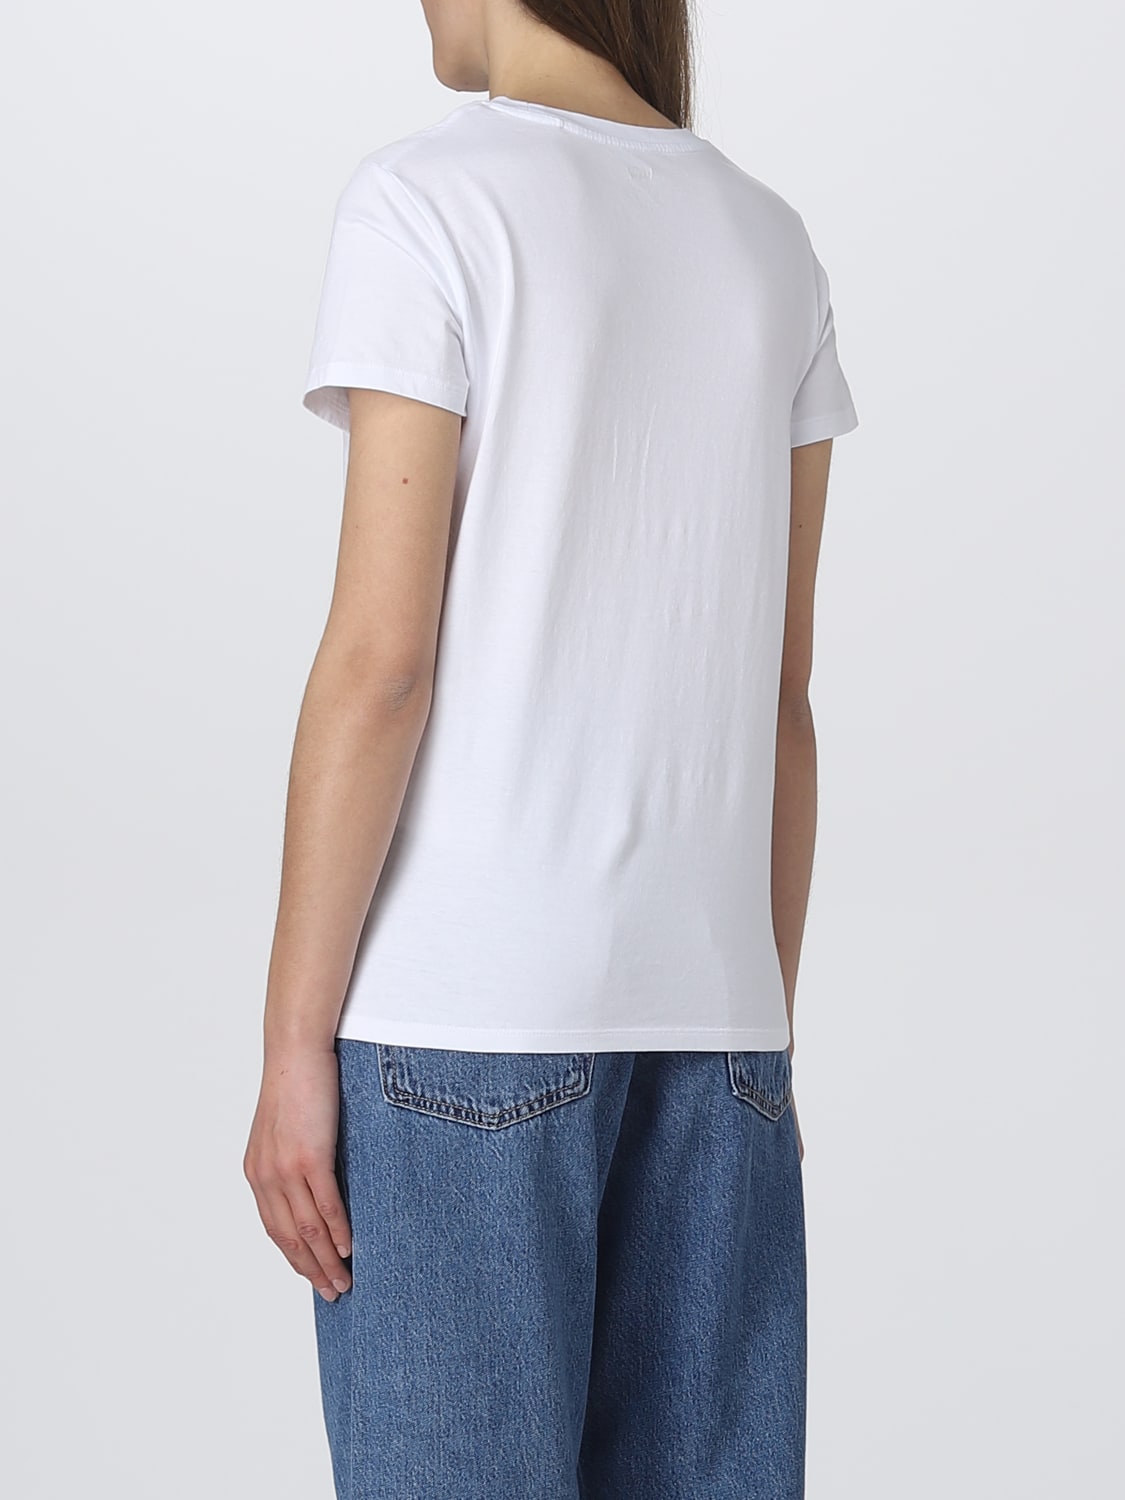 Tシャツ リーバイス: Tシャツ Levi's レディース ホワイト 2